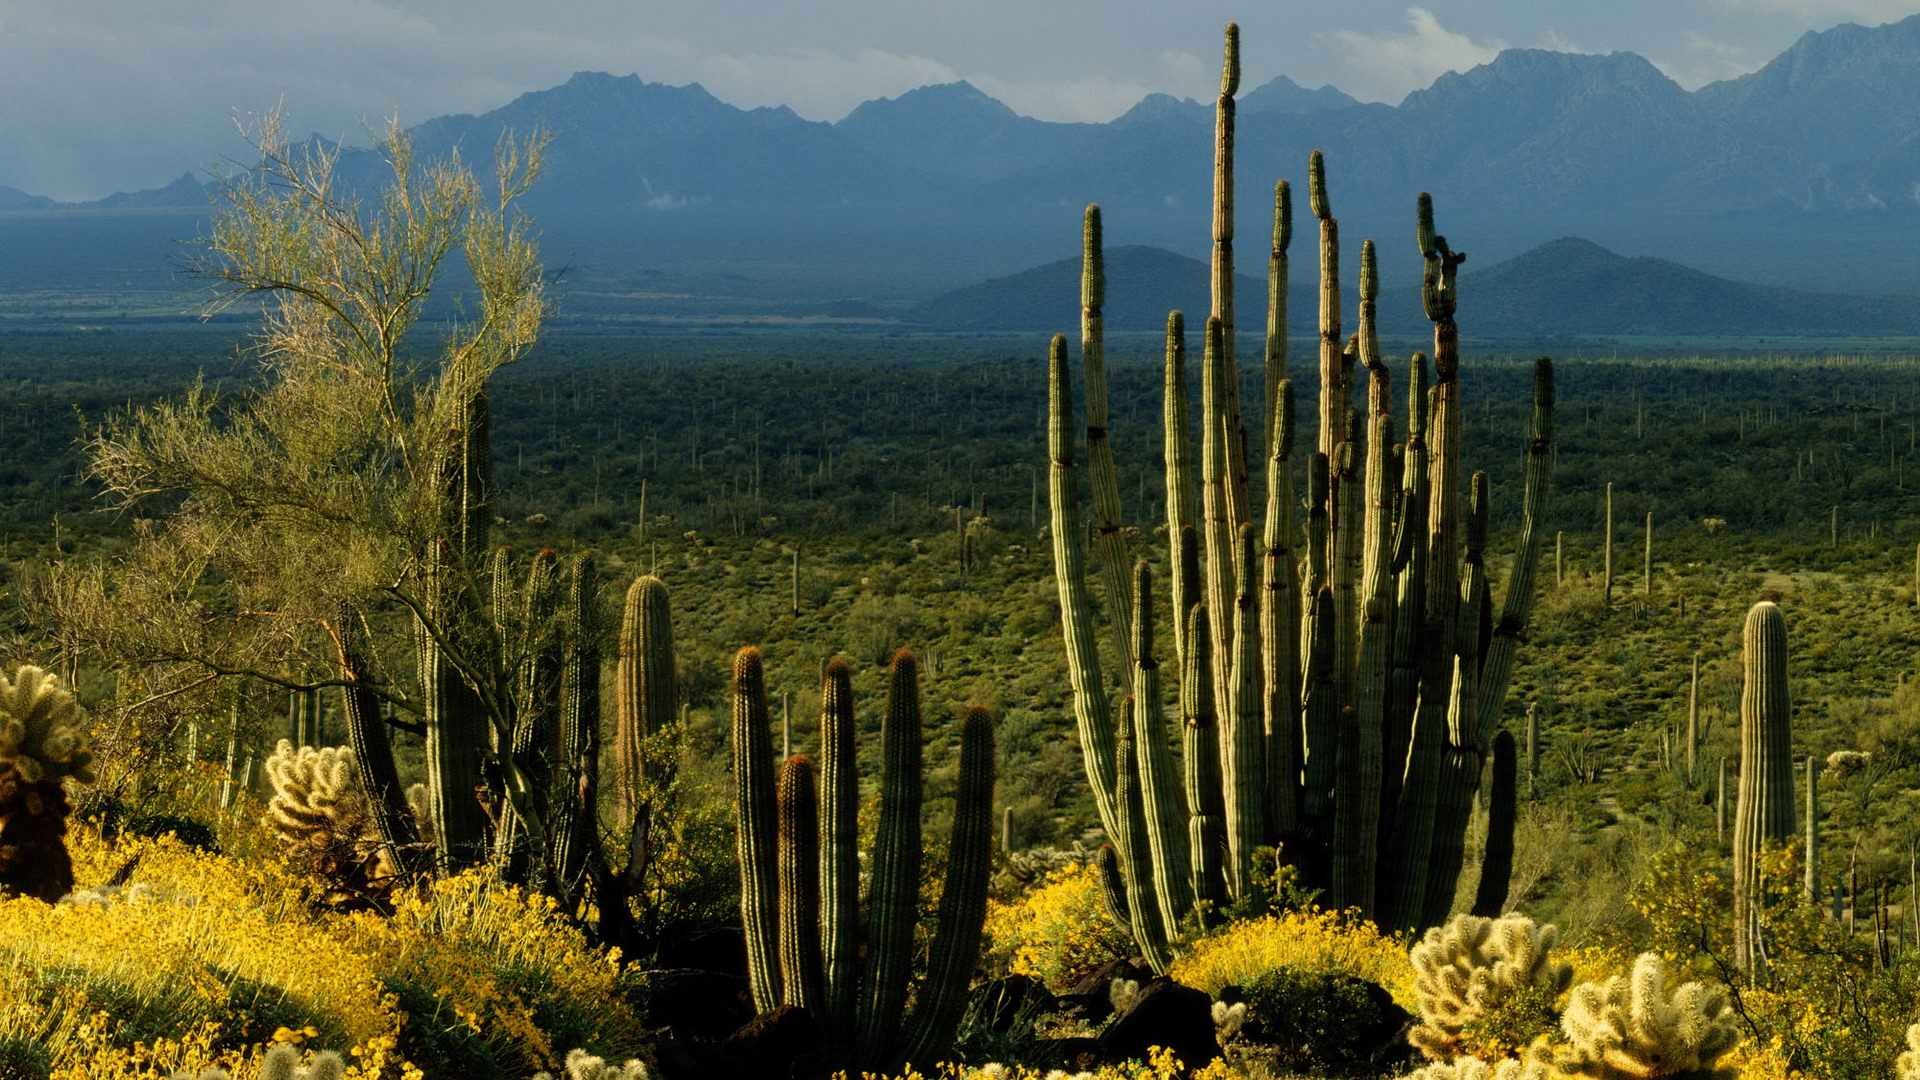 Природные объекты мексики. Мексика кактусы дикий Запад. Штат Аризона кактусы. Кактусовый лес в Мексике. Национальный парк Сагуаро штат Аризона.